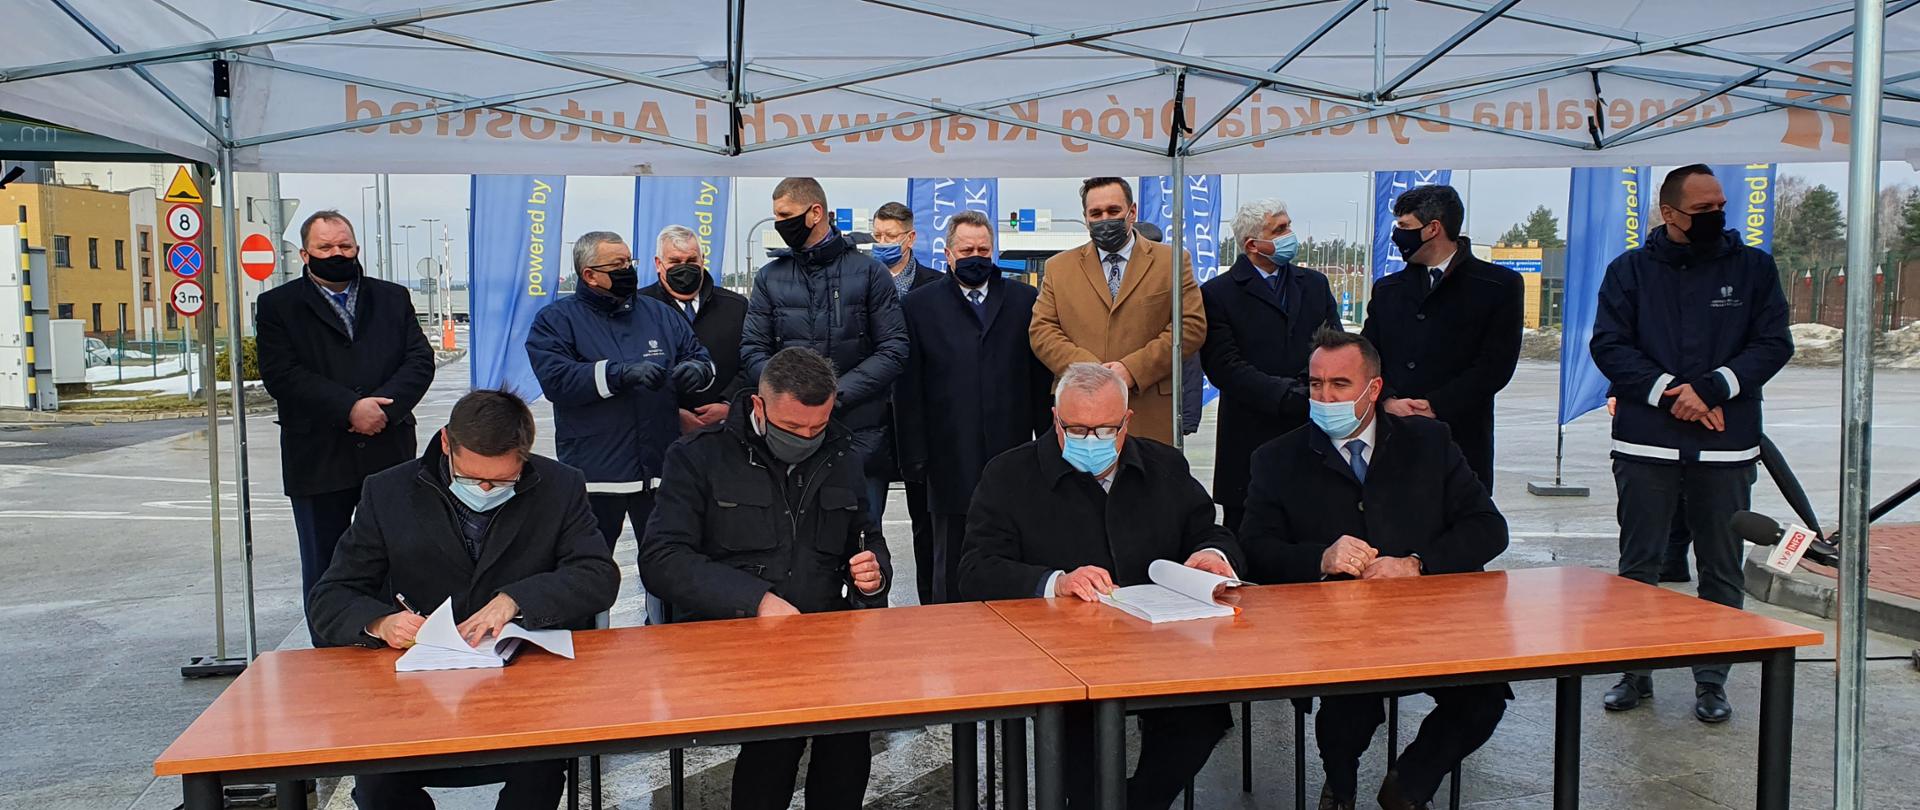 Przy długim stole siedzi 4 mężczyzn, z których 2 podpsuje umowę na projekt i budowę odcinka S19 Kuźnica - Sokółka 